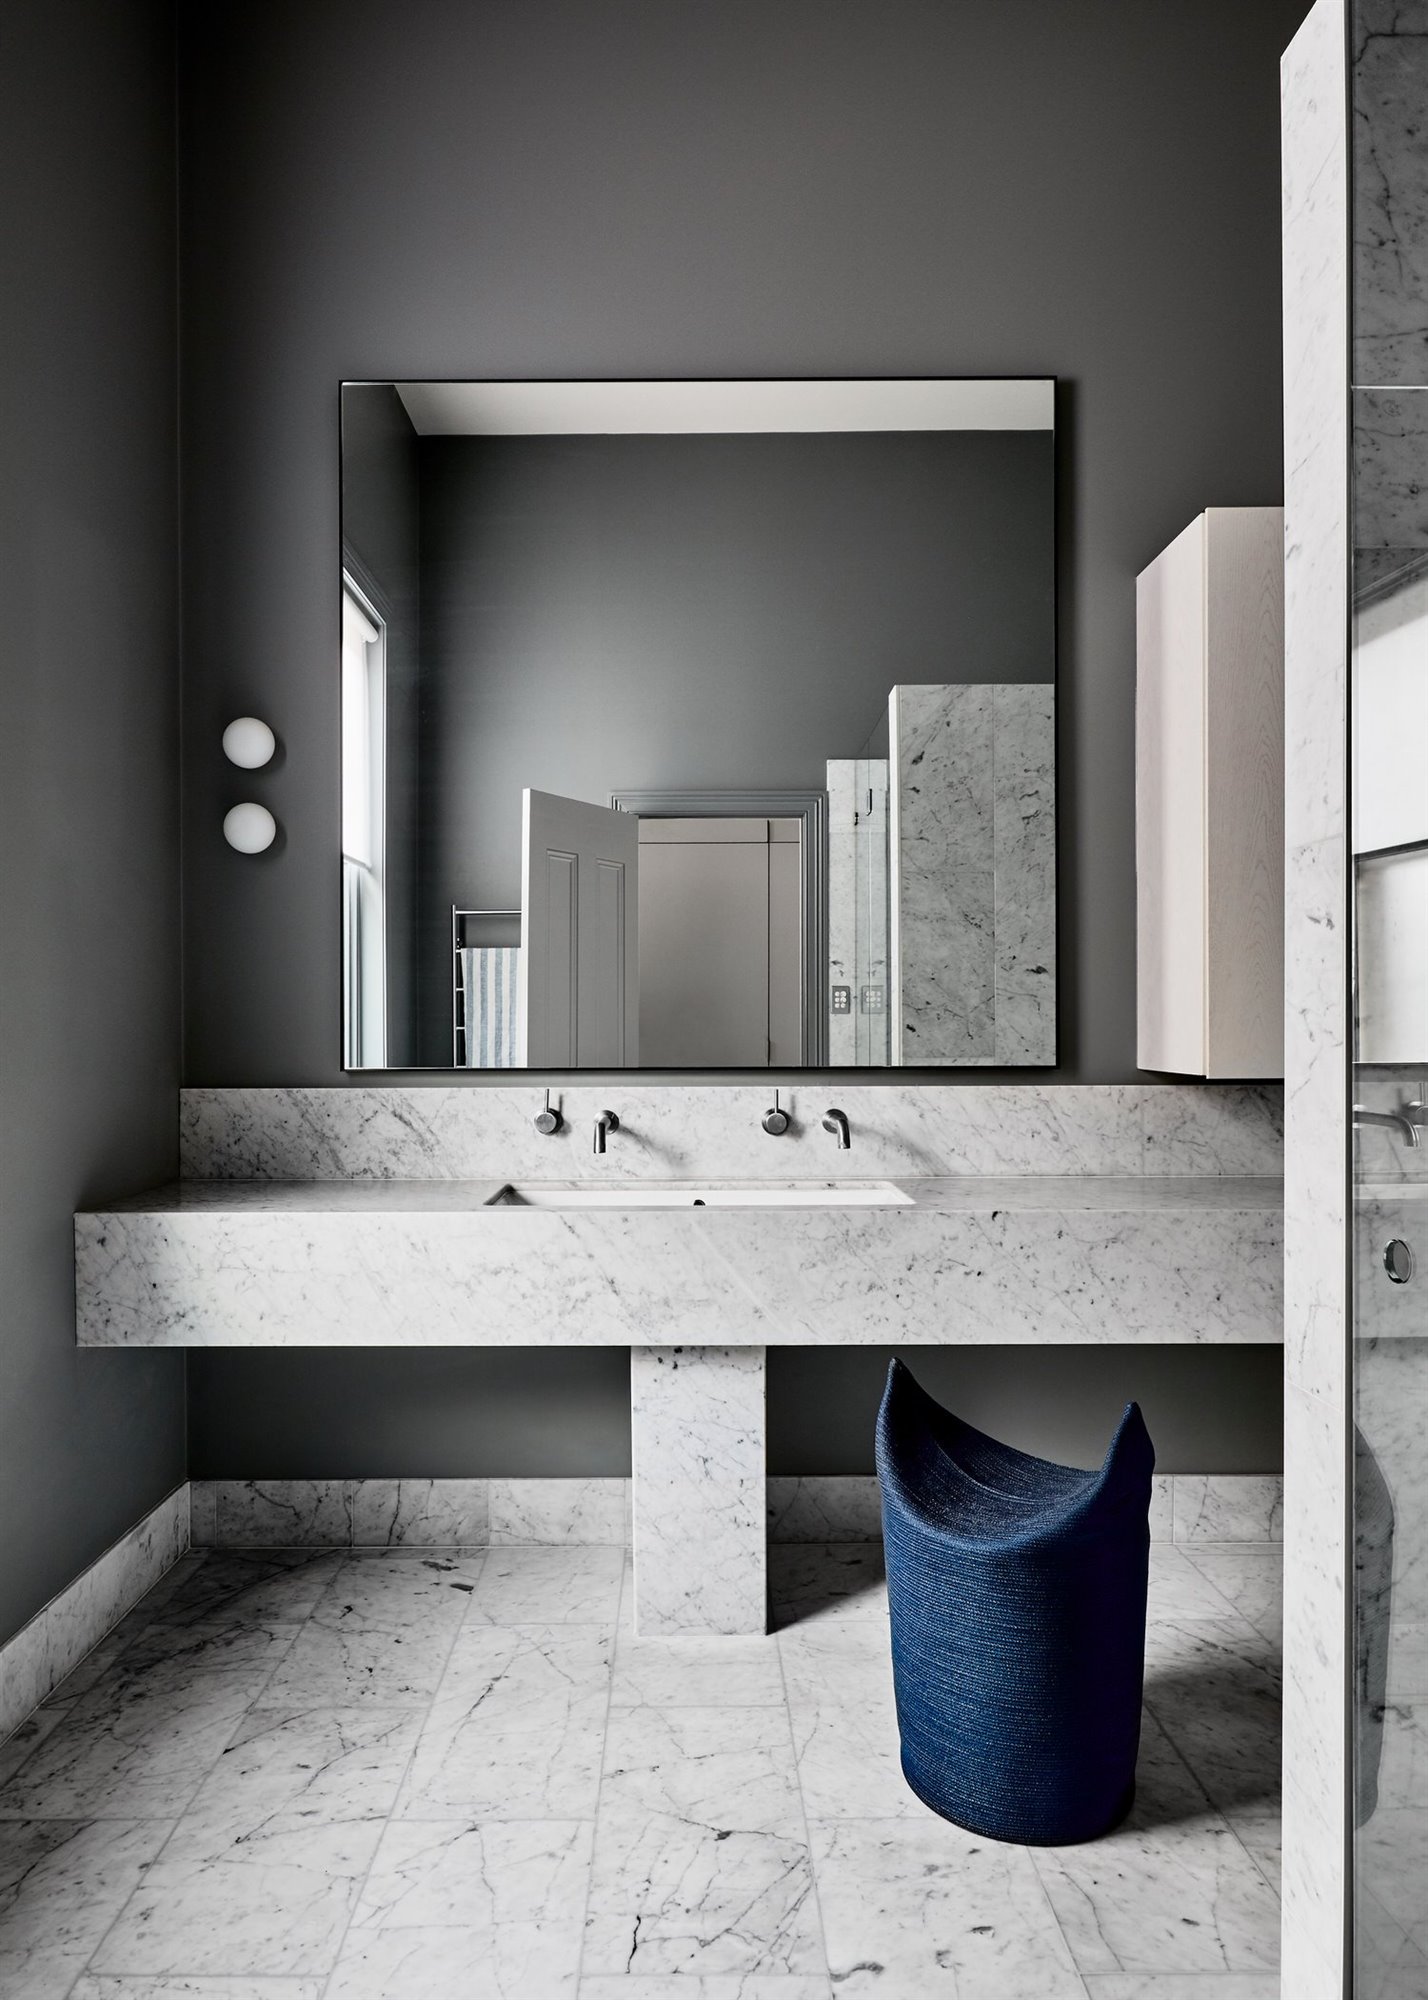 Baño de piedra de color gris de una casa en Australia